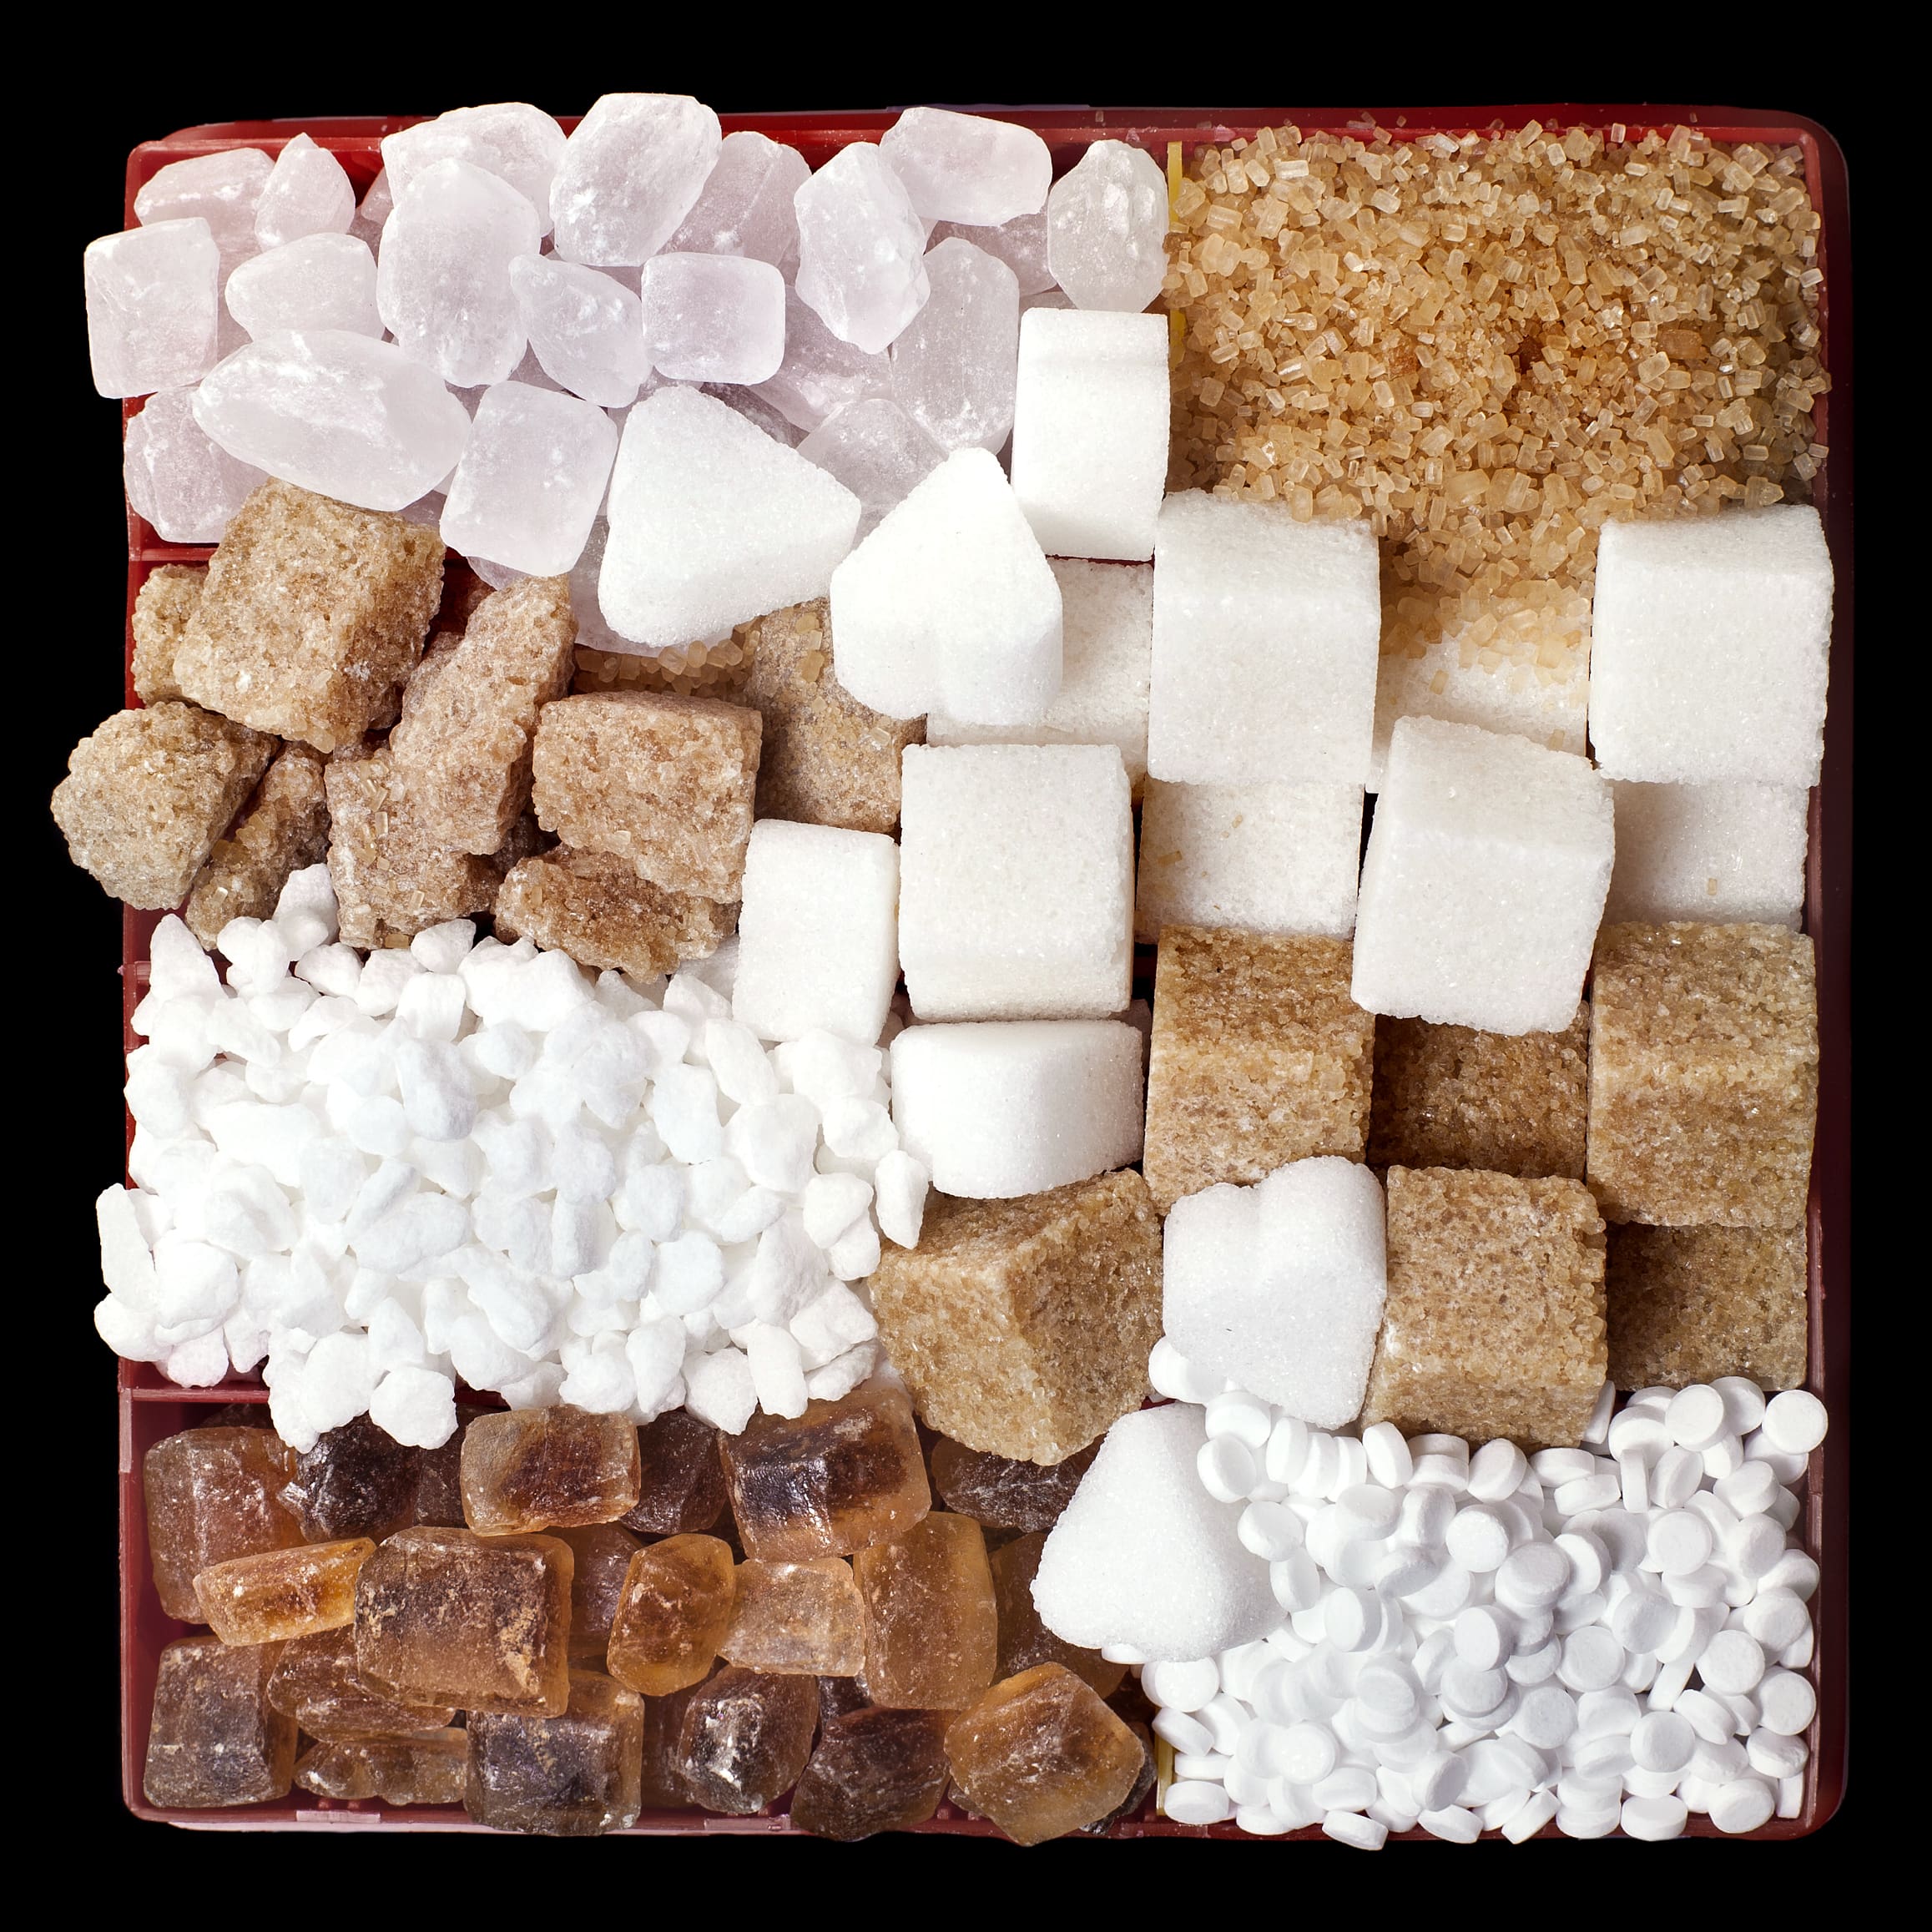 Bilan de l’utilisation des sucres et édulcorants dans les aliments transformés